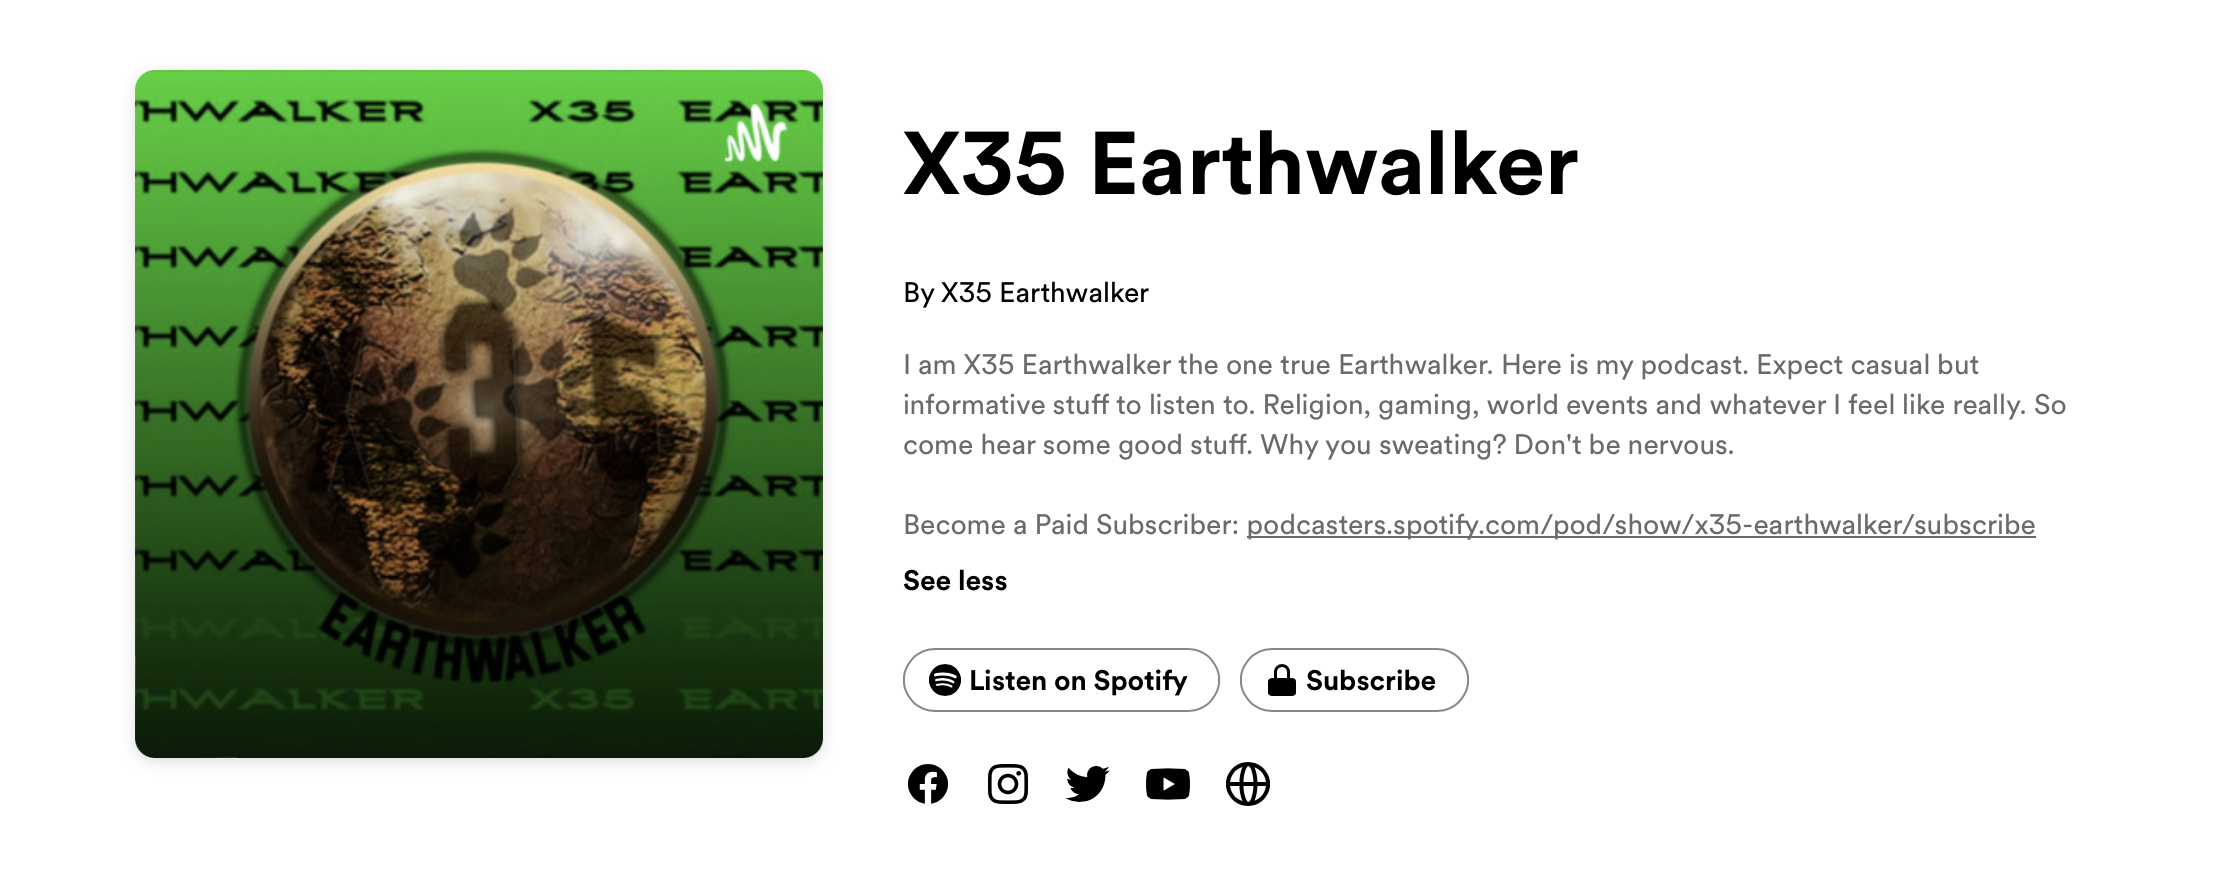 Podcast channel X35 Earthwalker